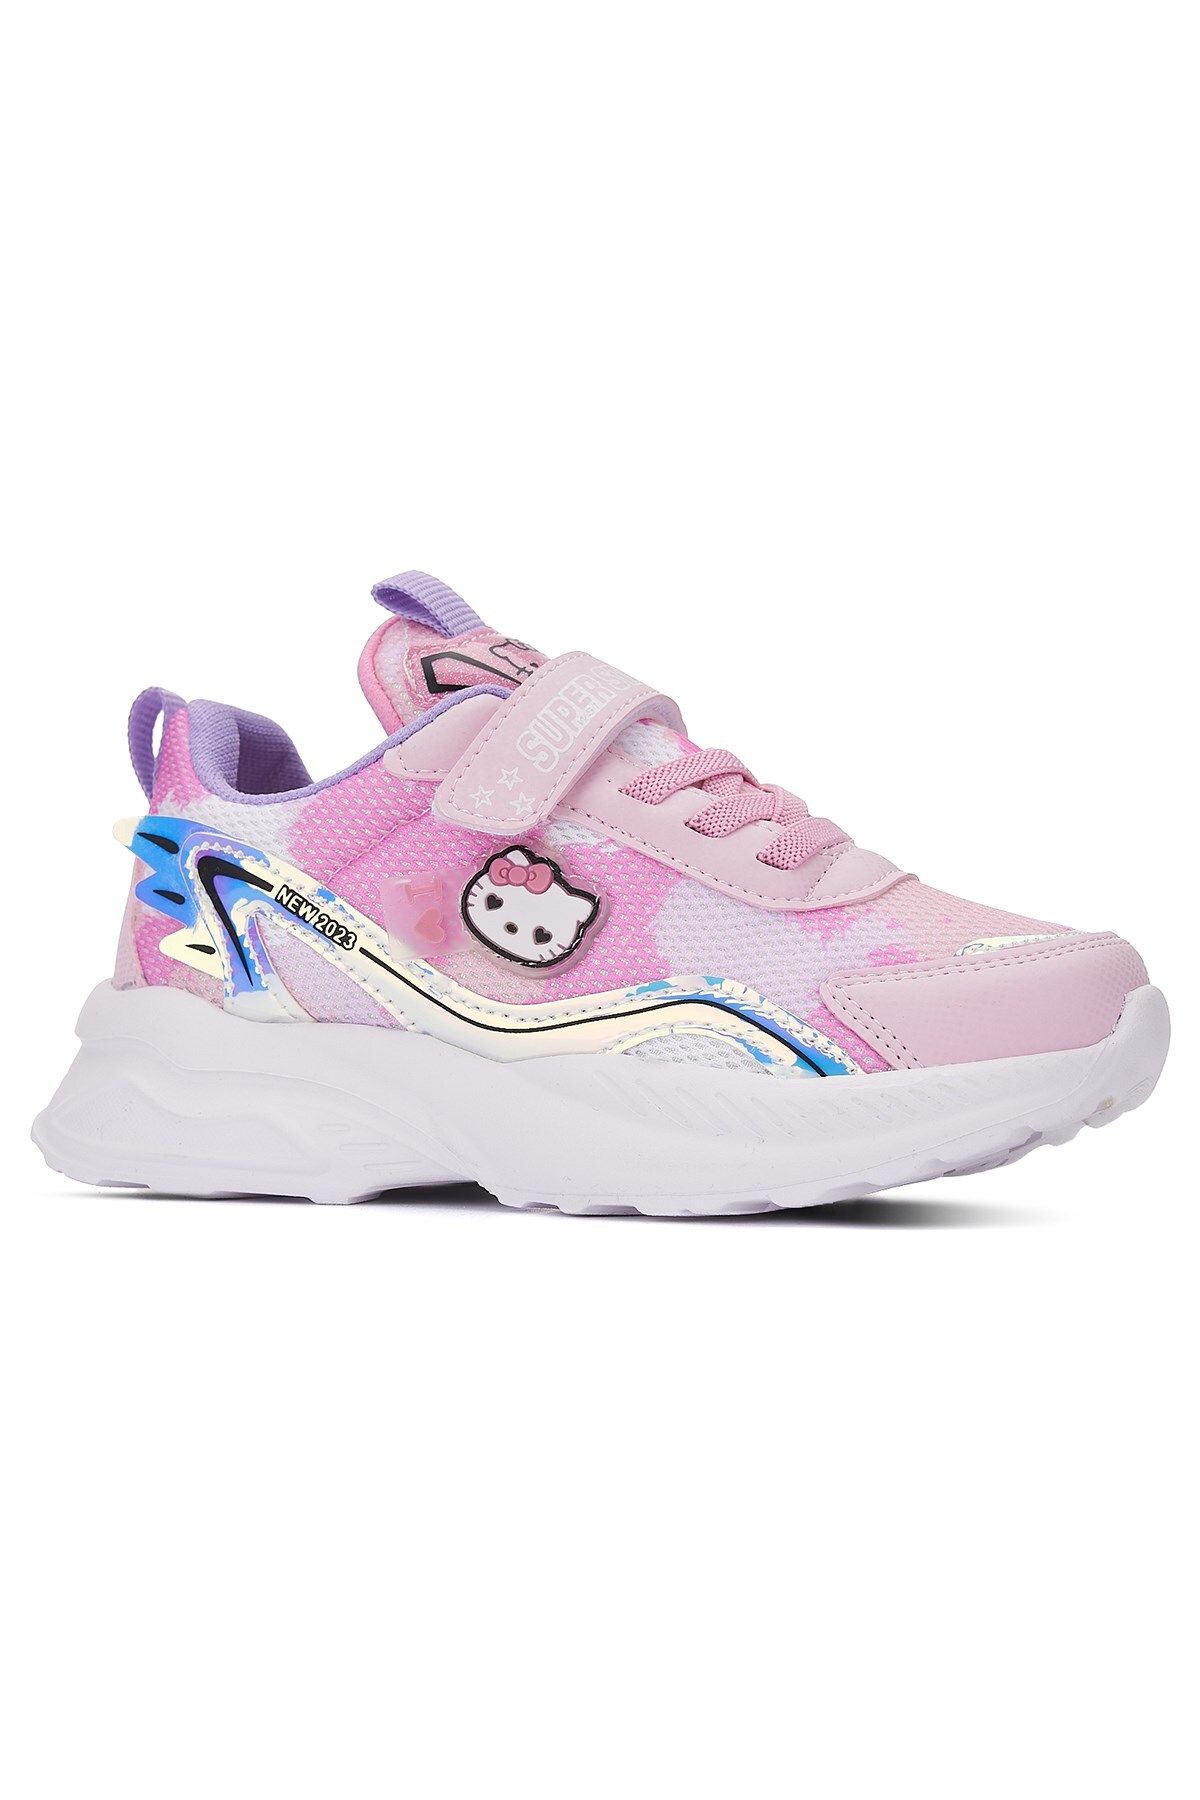 Nstil Günlük Kız Çocuk Sneaker Lastik Bağcık Hologram Cırtlı Hello Kitty Nefes Alabilen Ayakkabı 2014